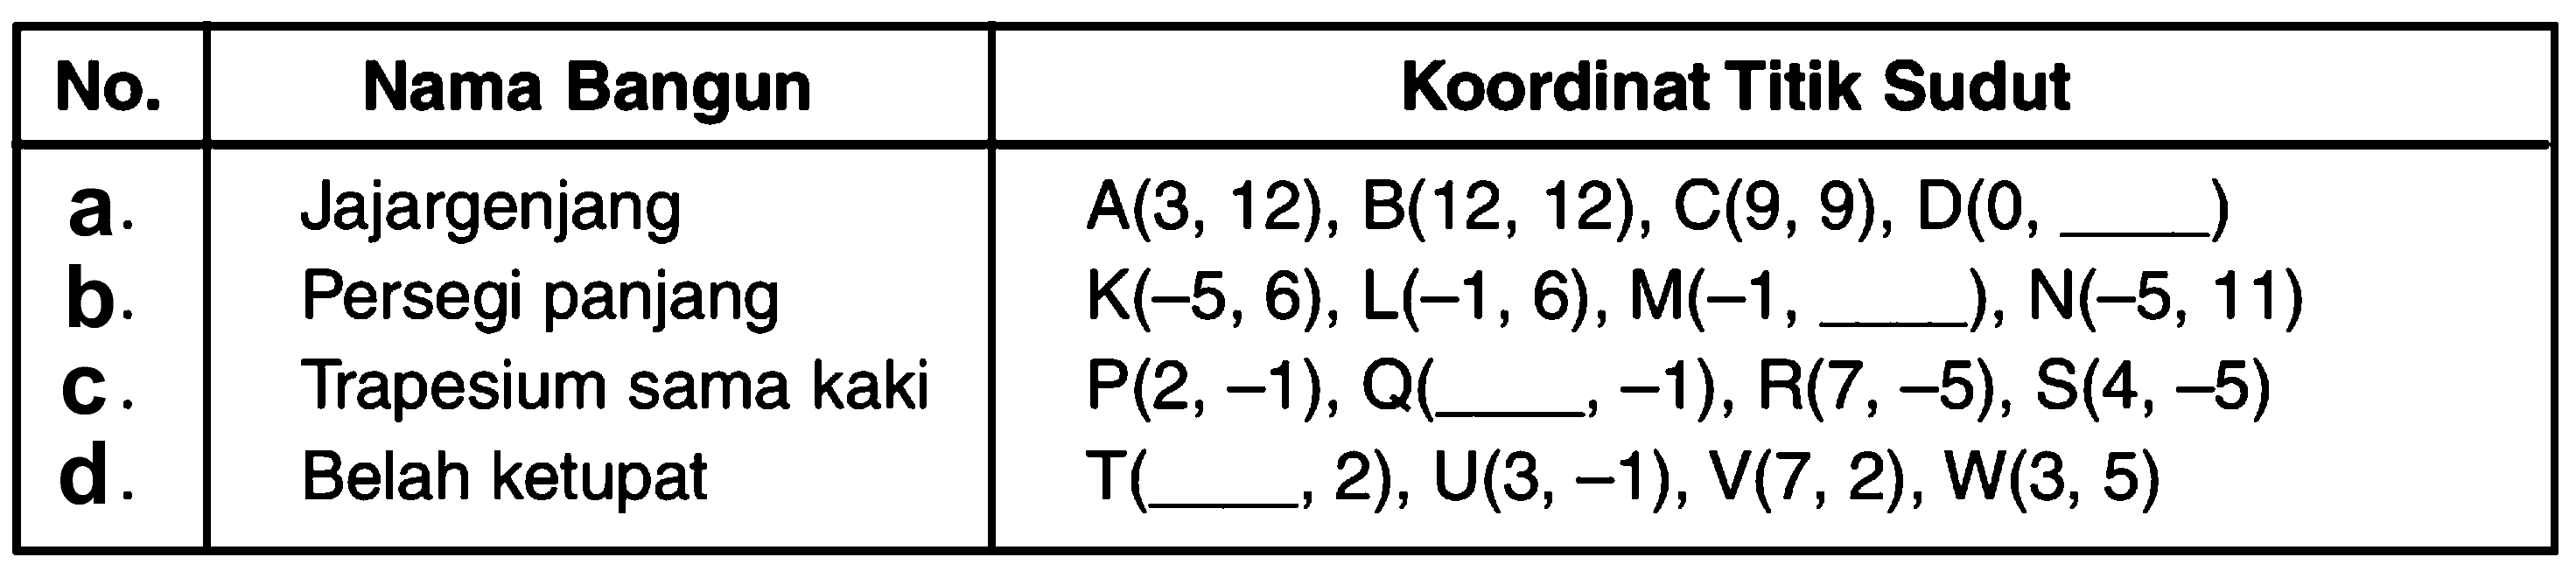 Nama Bangun No. Koordinat Titik Sudut a.Jajargenjang A(3, 12), B(12, 12),C(9, 9), D(O,.) b.Persegi panjang K(-5,6), L(-1,6), M(-1,__,) N(-5, 11) C. Trapesium sama kaki P(2, -1), Q( -1), R(7, -5), S(4,-5) d. Belah ketupat T(' 2), U(3,-1), V(7, 2), W(3, 5)